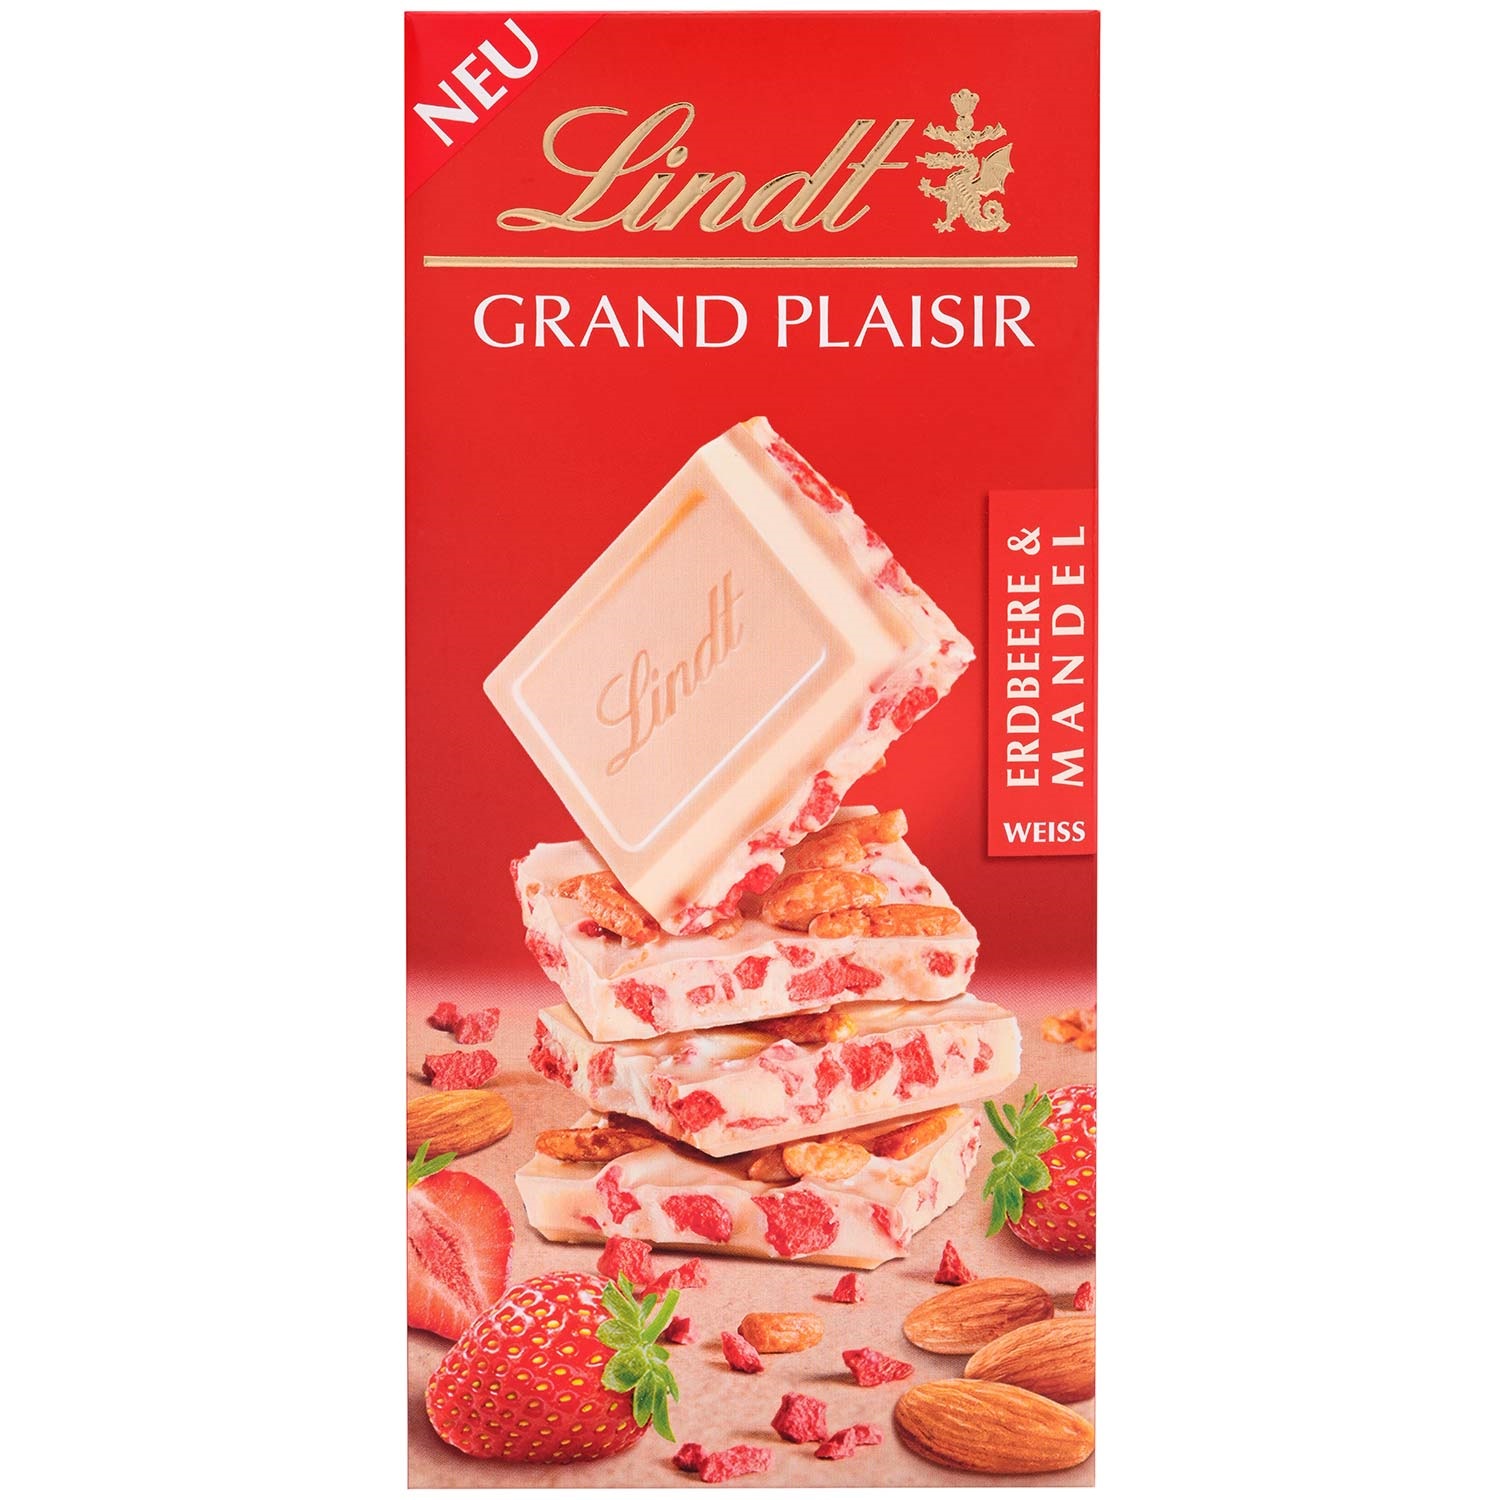 Lindt Grand Plaisir Erdbeere & Mandel Weiße Schokolade Tafel 150g купить,  отзывы, фото, доставка - Клуб совместных покупок СП Фреш